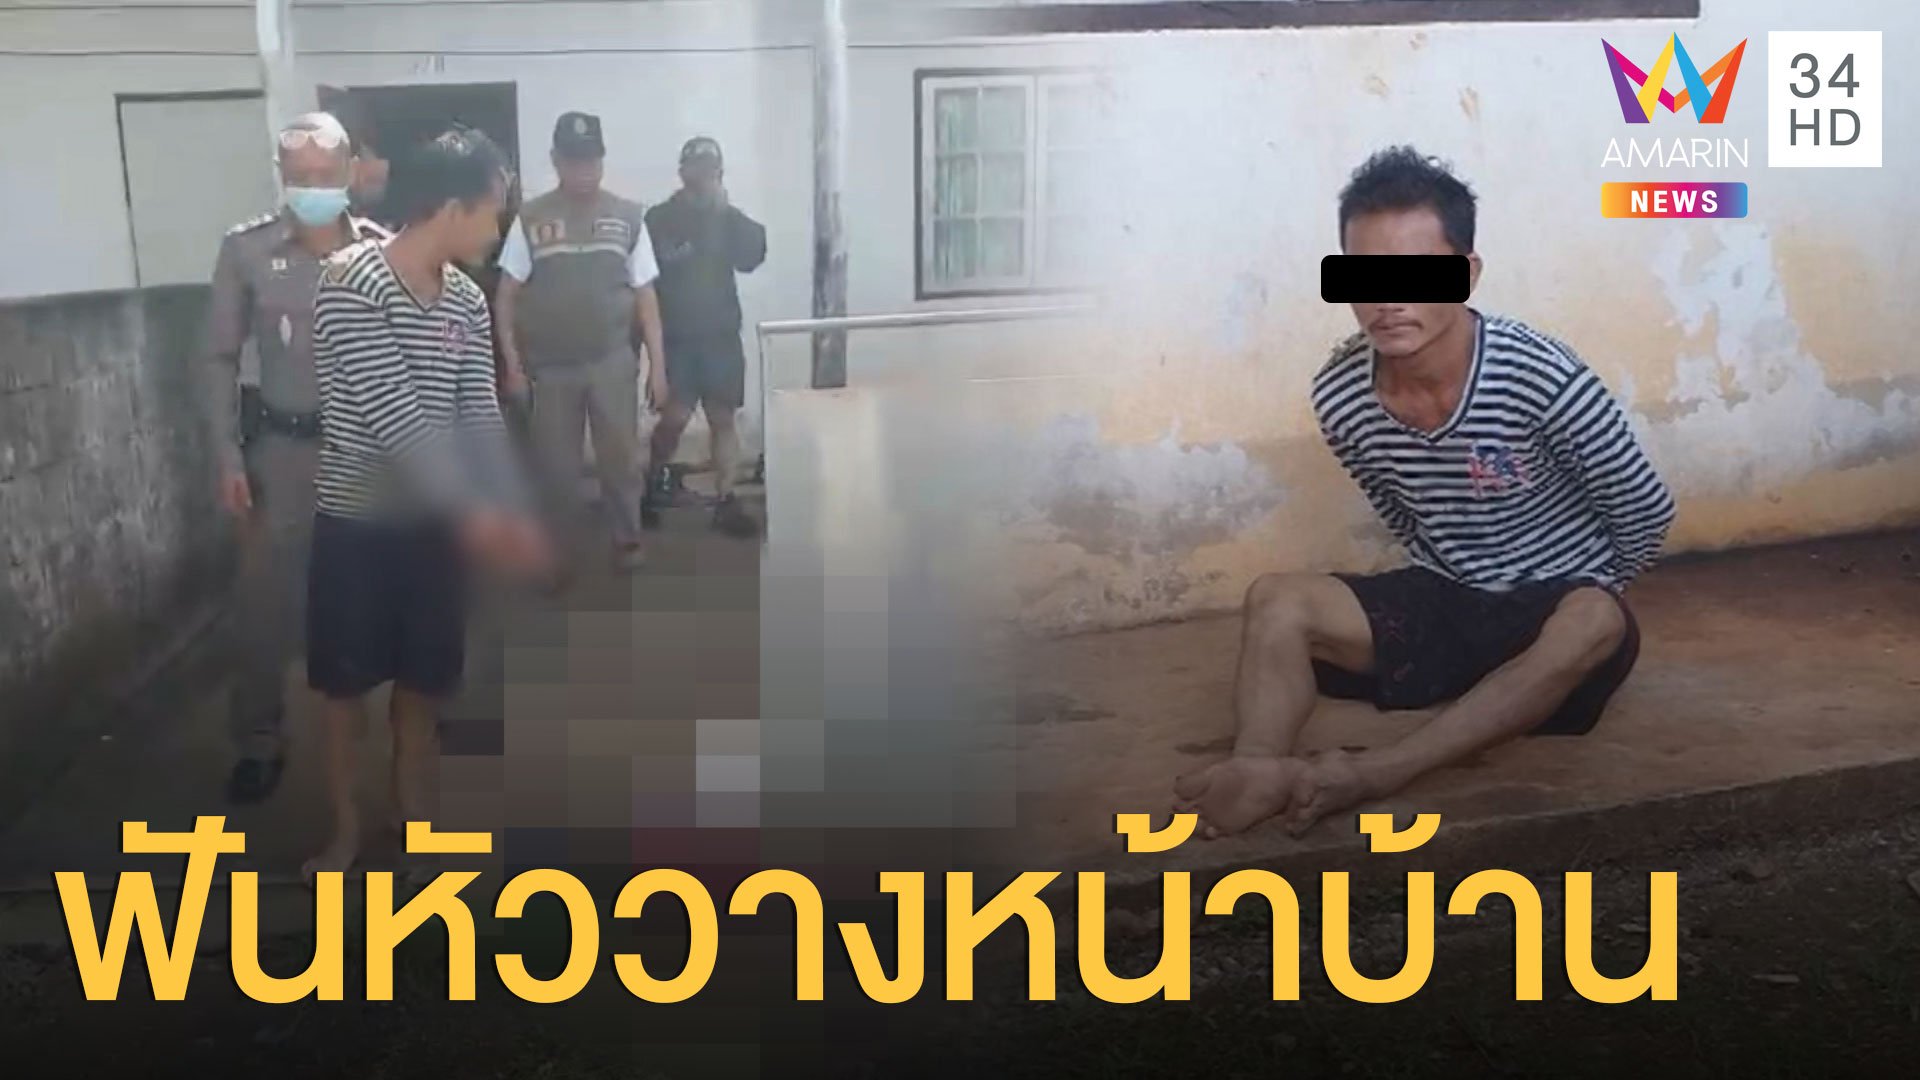 หนุ่มพม่าโหดฆ่าตัดคอเพื่อนร่วมชาติ หิ้วหัวมาวางหน้าบ้าน | ข่าวเที่ยงอมรินทร์ | 25 ก.ย. 63 | AMARIN TVHD34